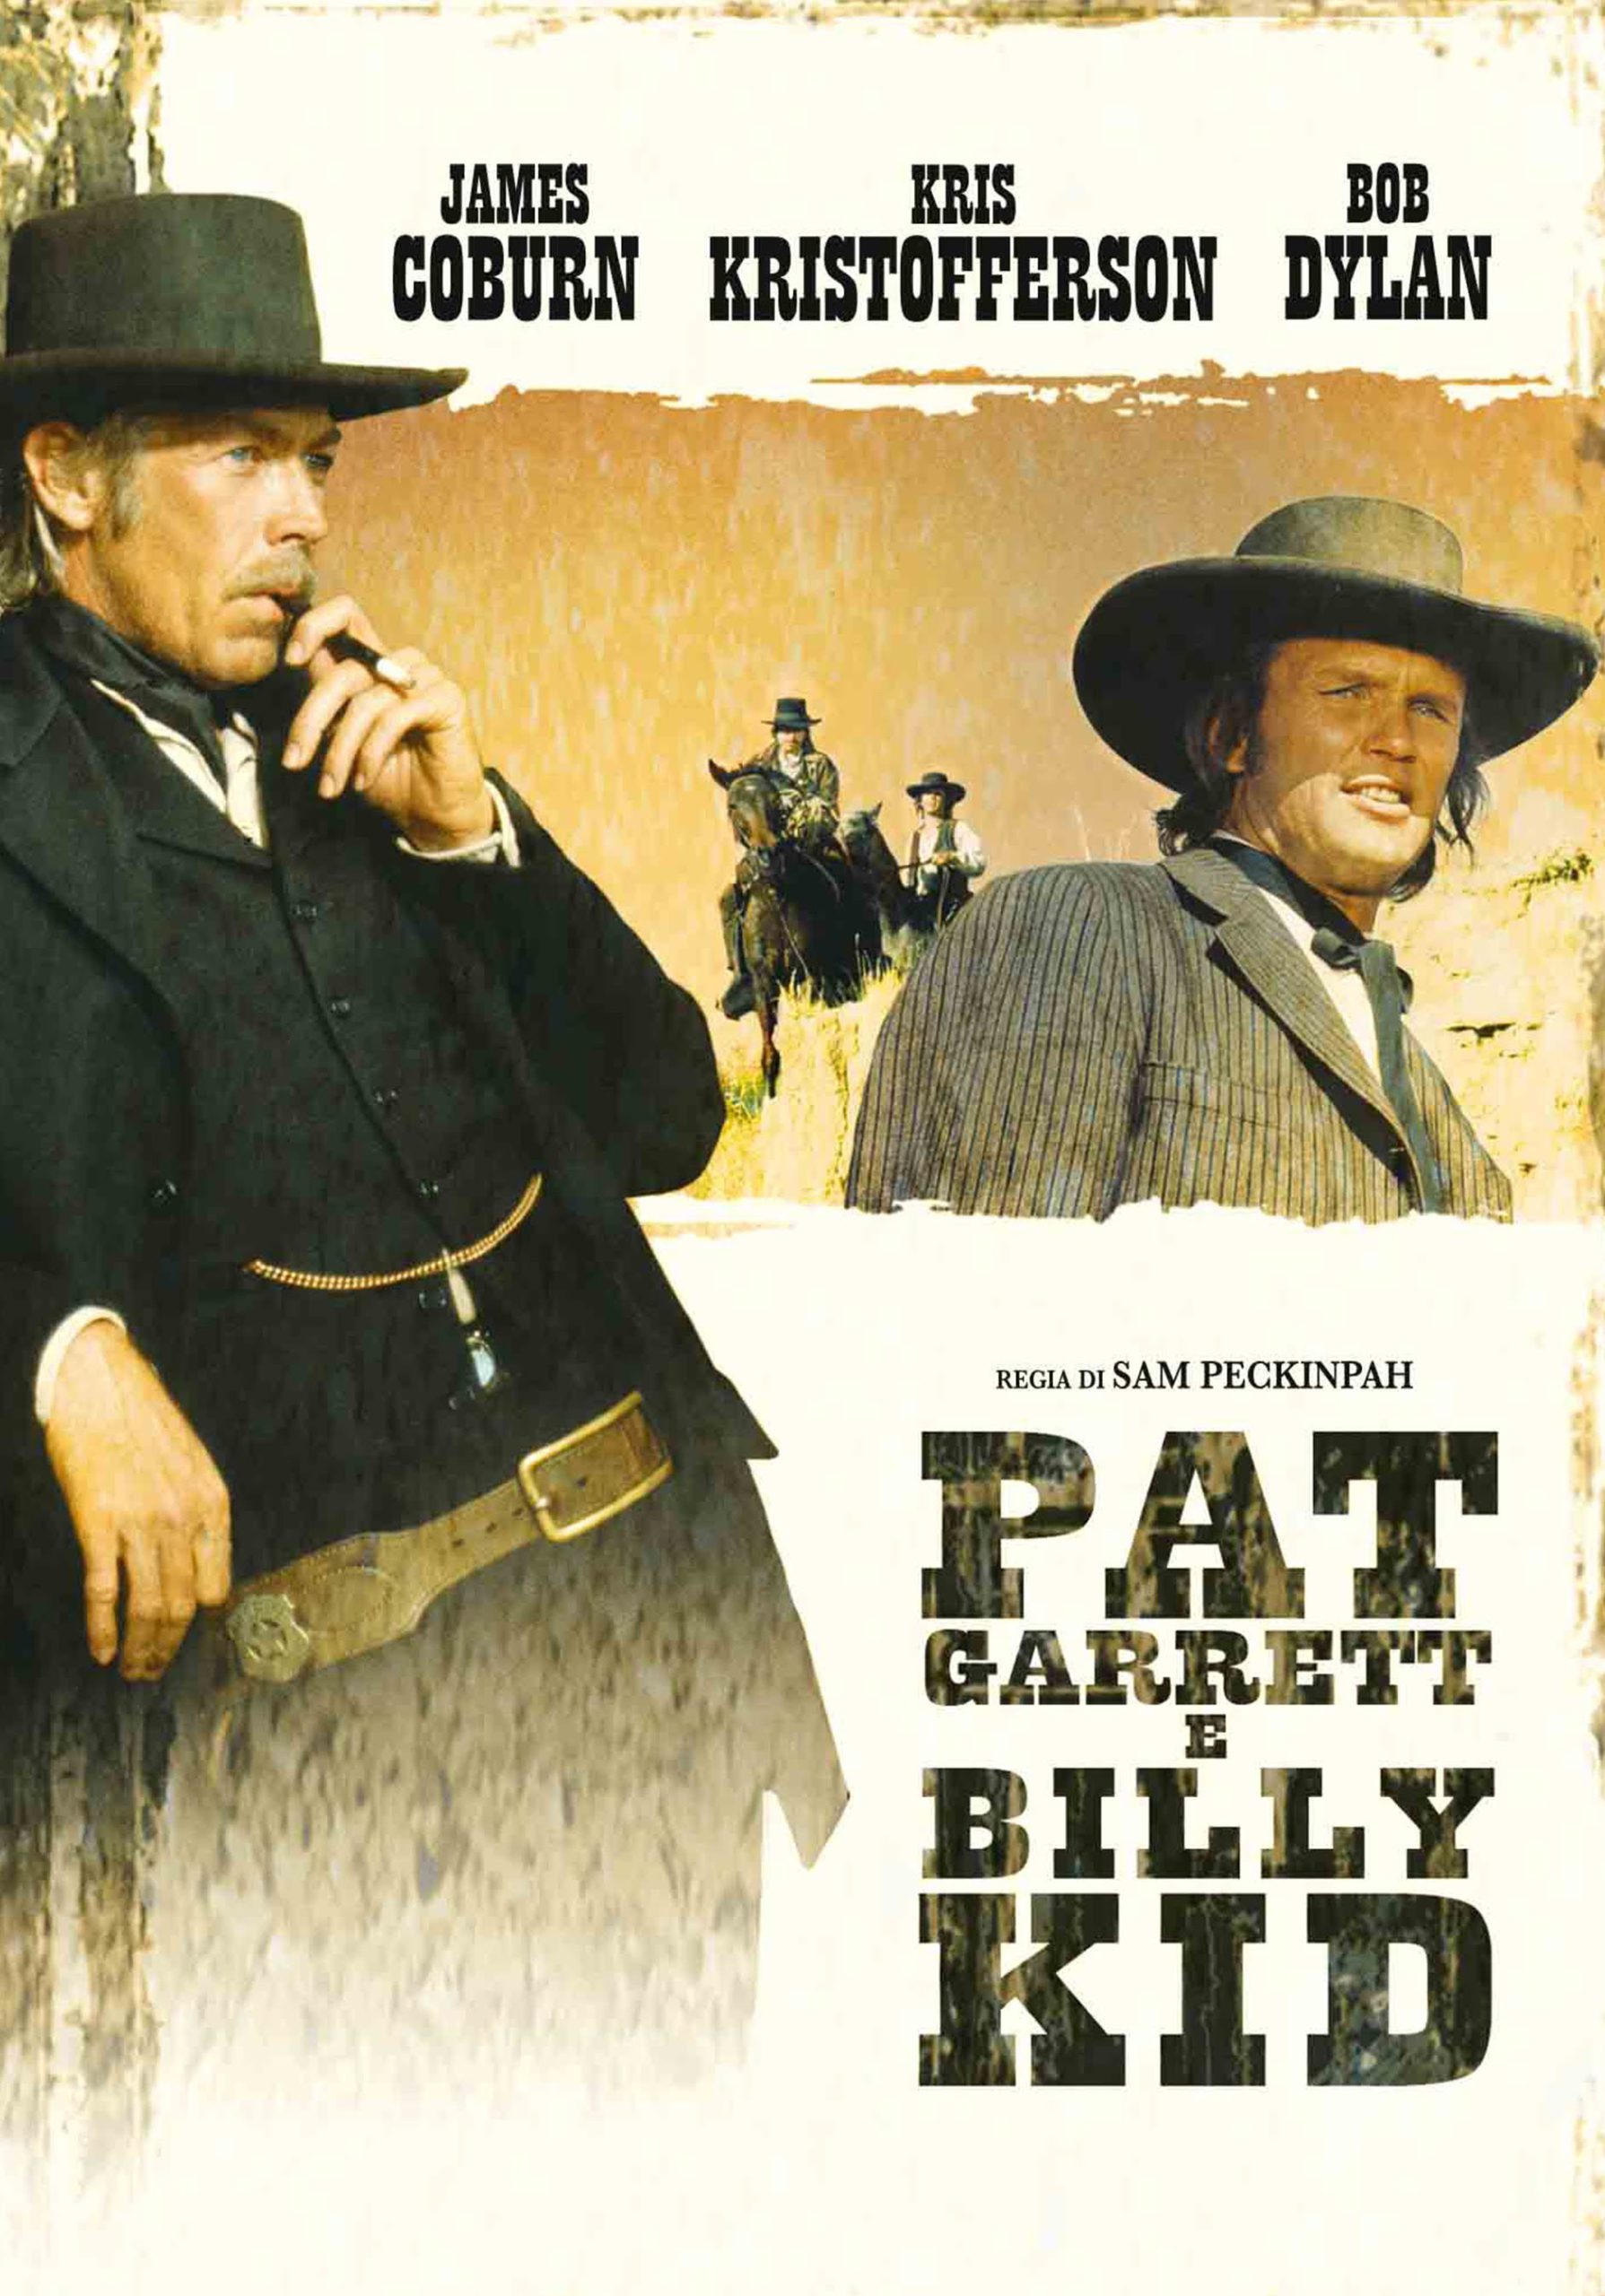 Pat Garrett e Billy the Kid [HD] (1973)